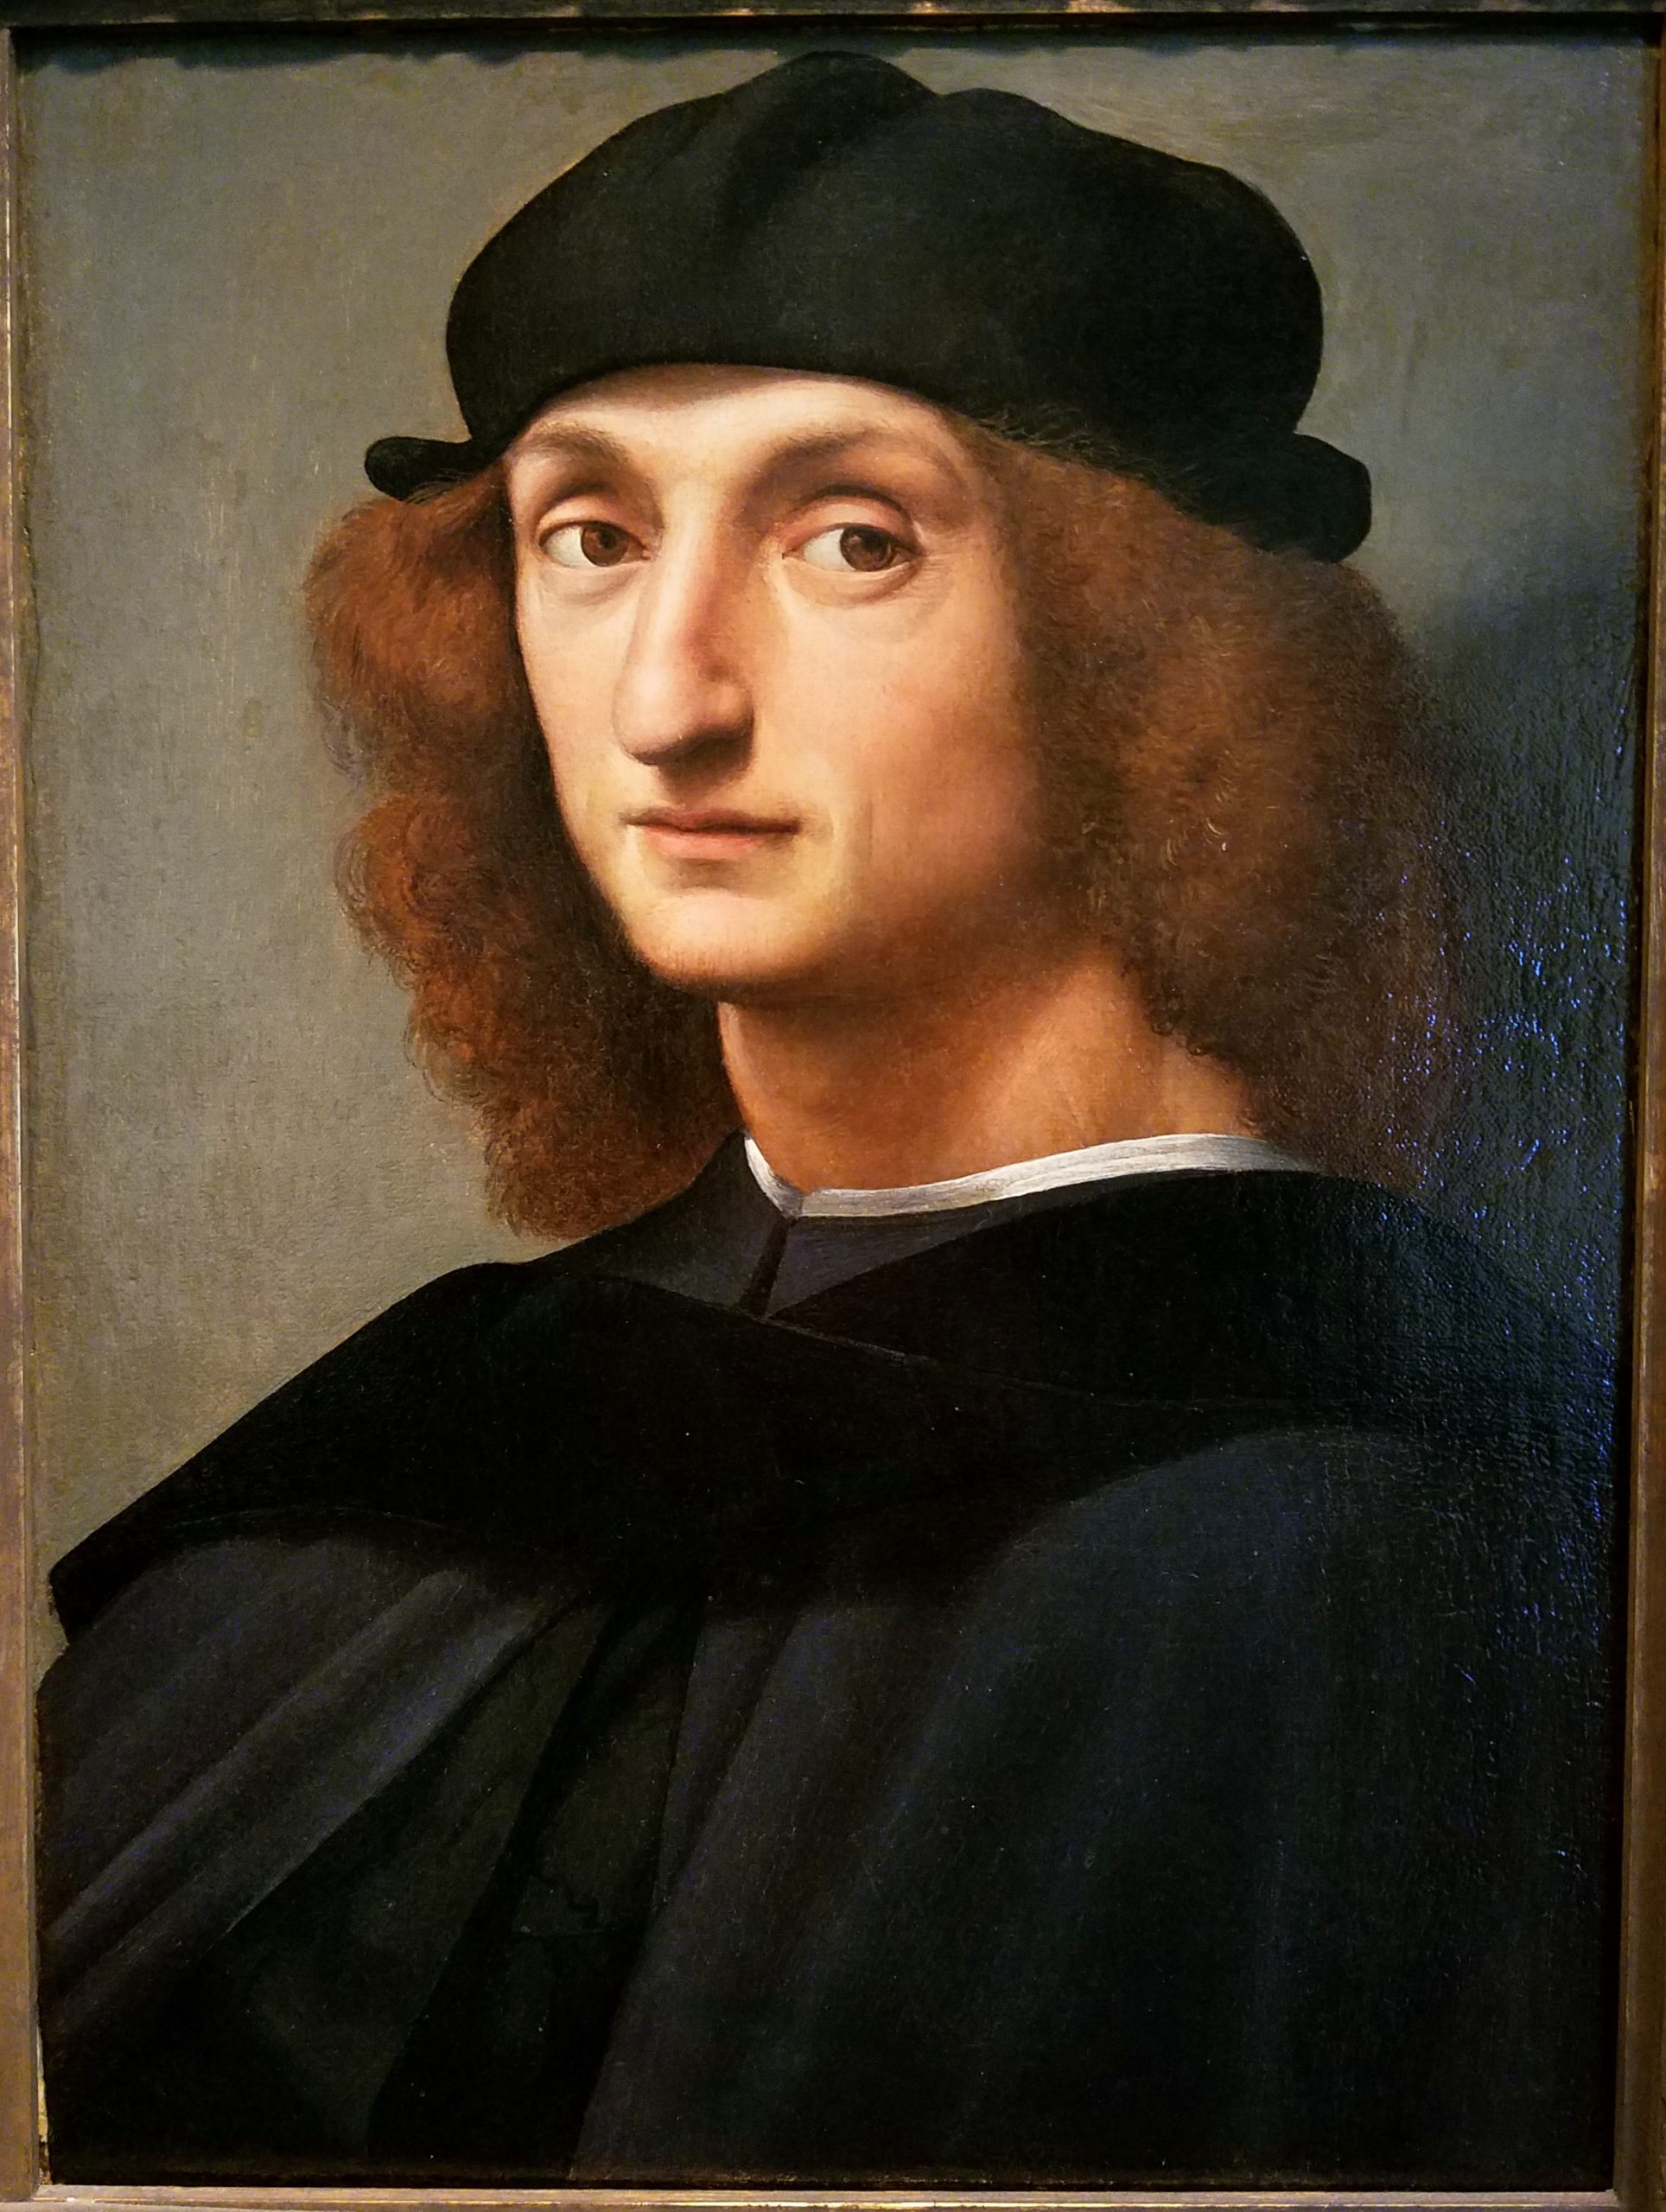 Rafel a fost unul dintre cei mai mari artisti ai Renasterii italiene